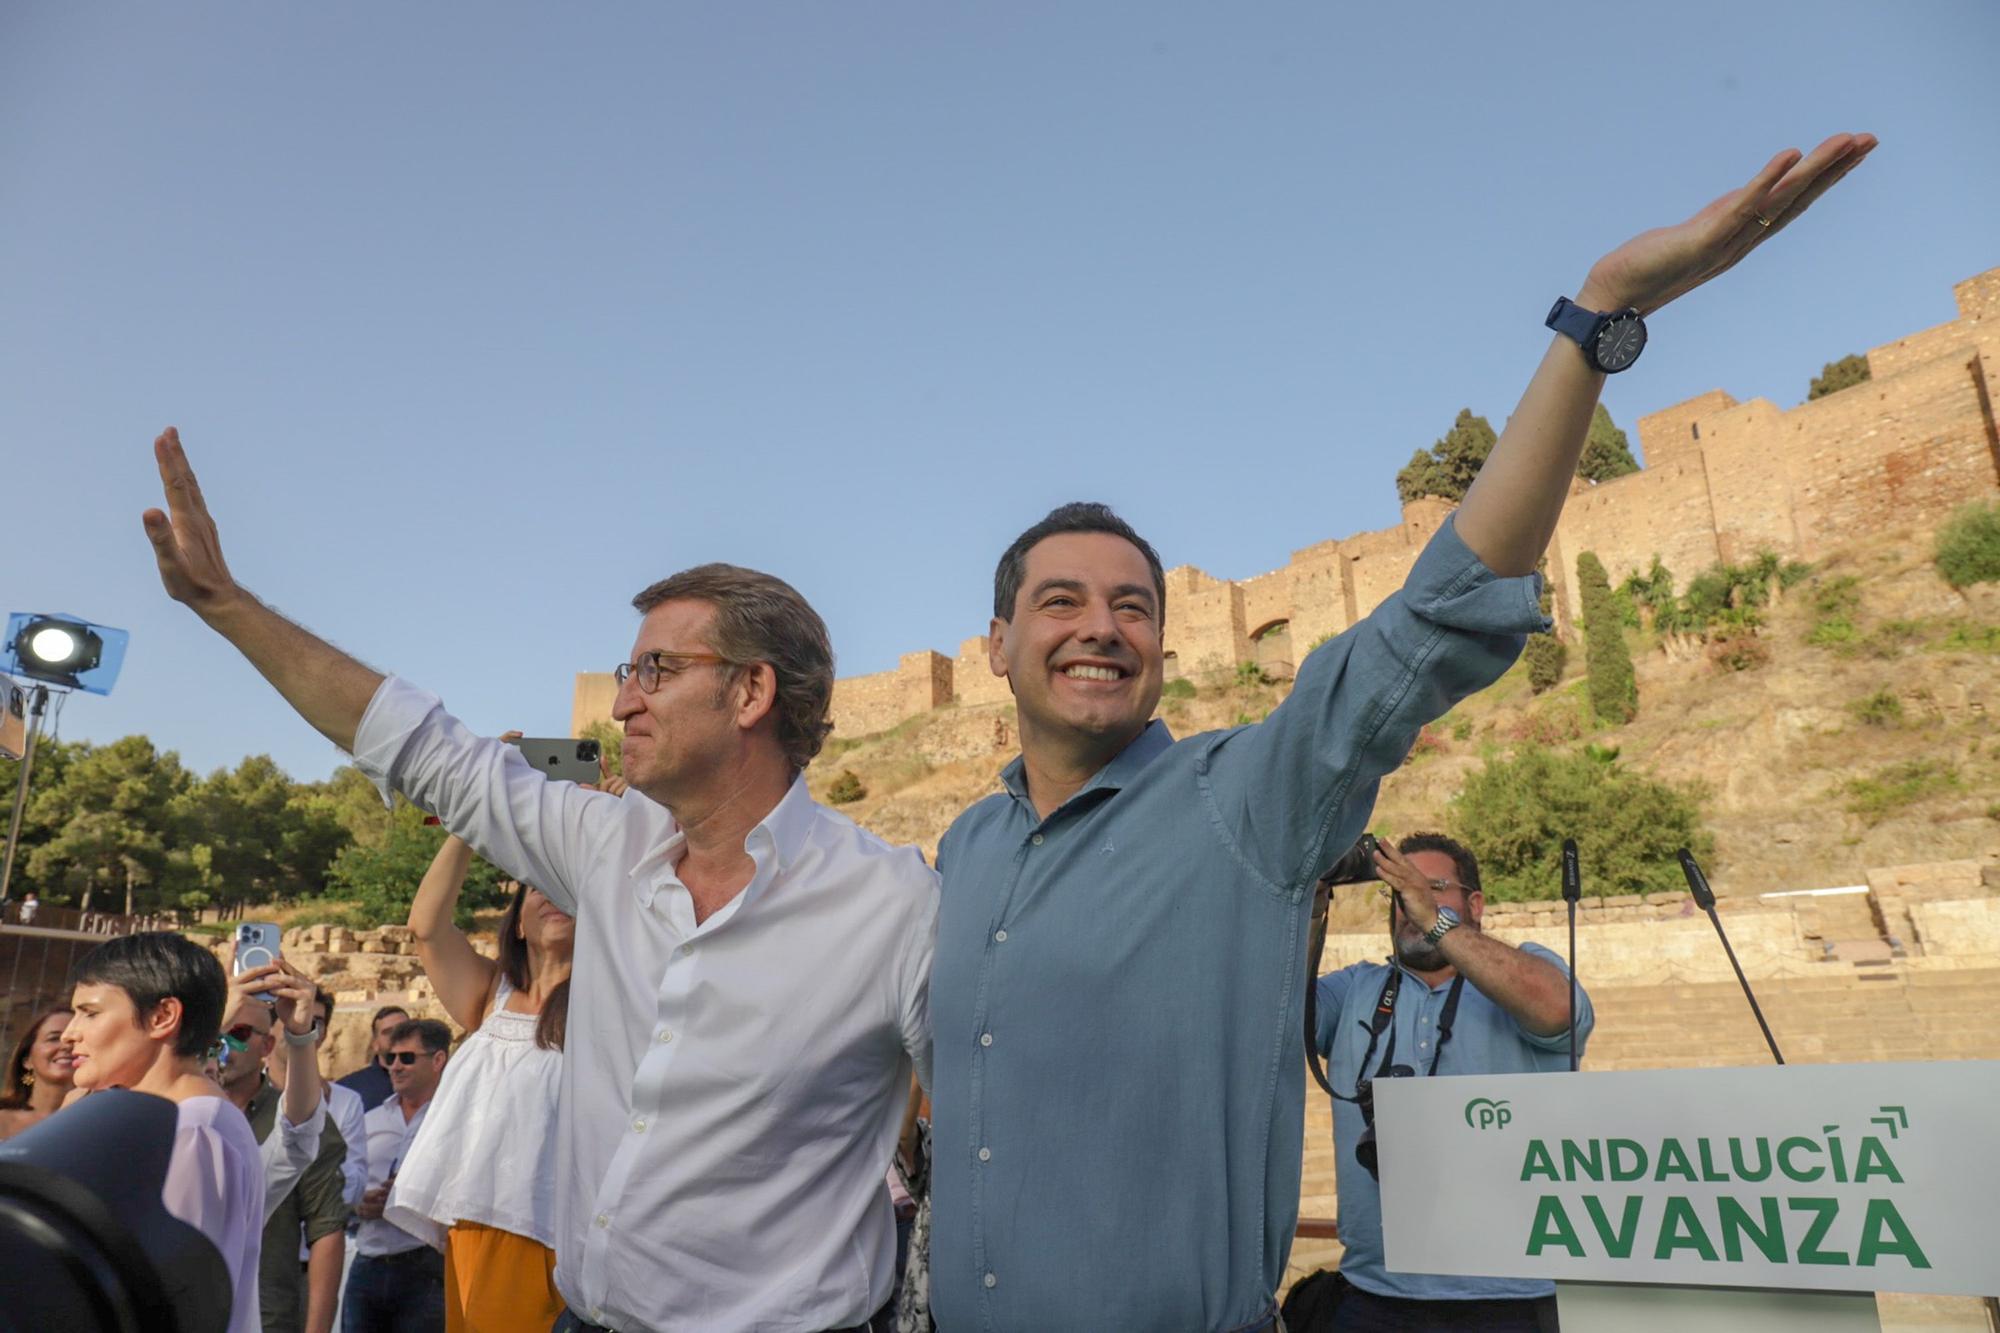 El presidente del PP-A y candidato a la reelección a la Presidencia de la Junta, Juanma Moreno, junto al presidente del PP, Alberto Núñez Feijoó, clausuran un mitin, en el acto electoral de campaña para los comicios autonómicos del próximo día 19 a 11 de junio del 2022 en Málaga.